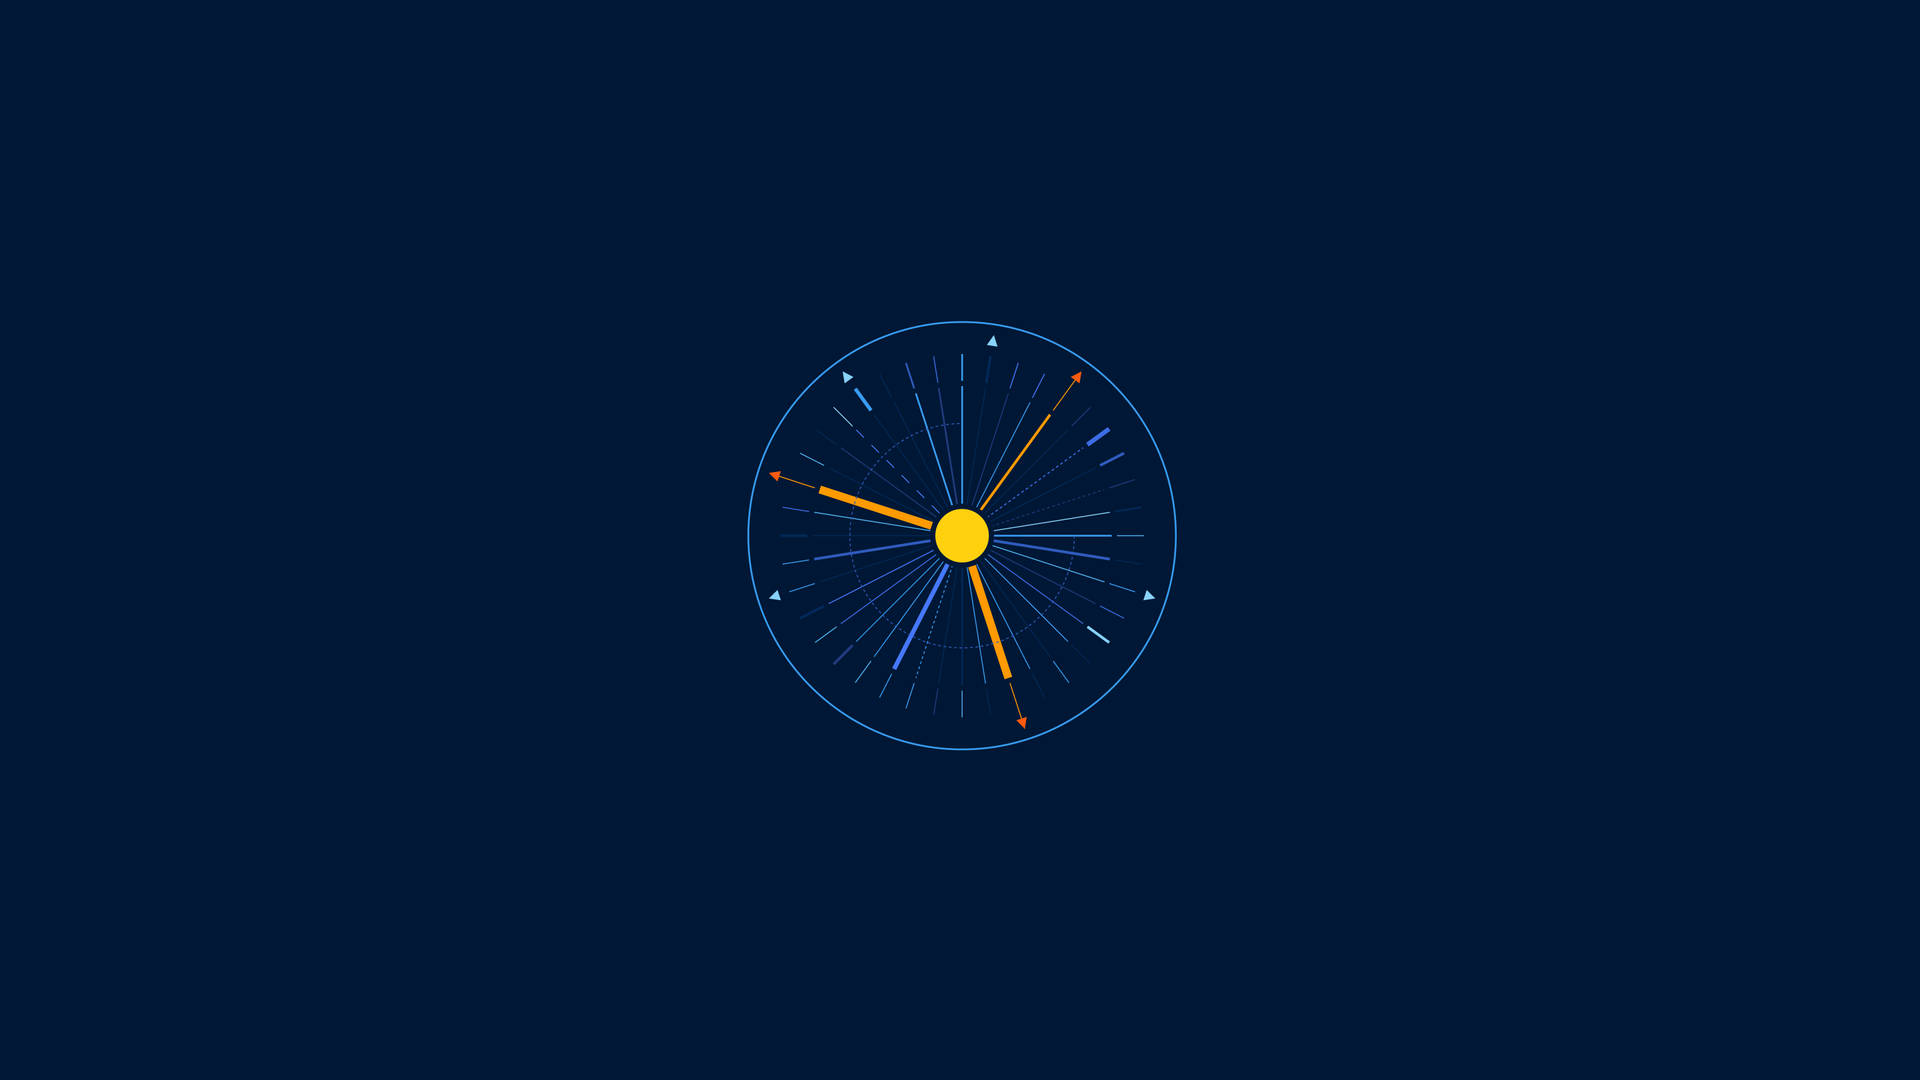 Minimalist Time Clock